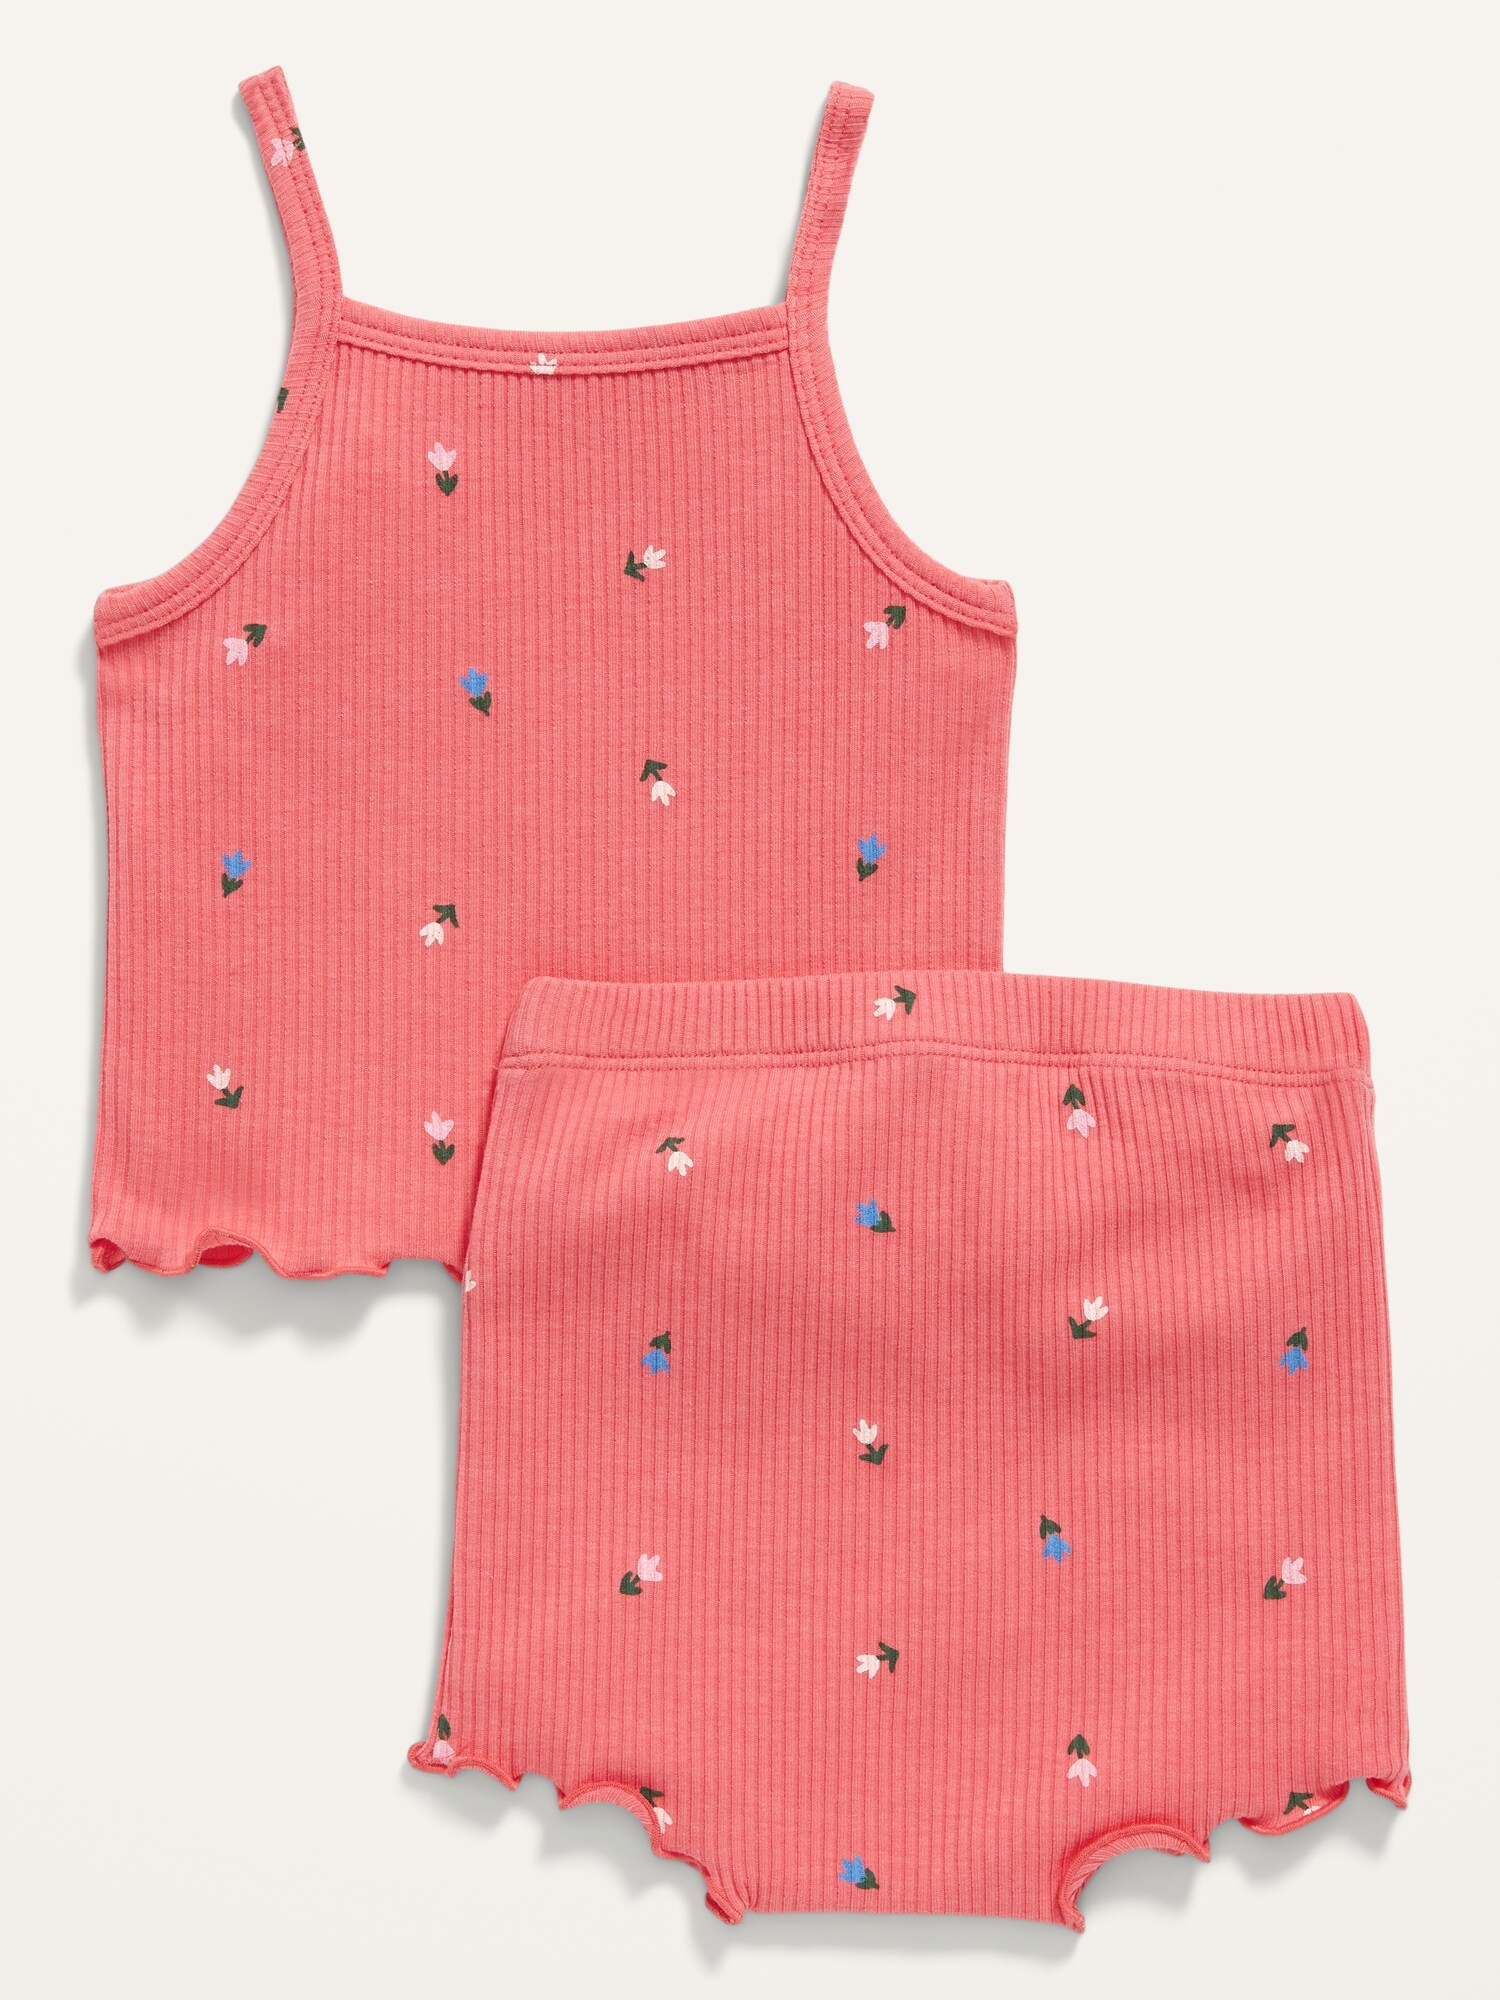 Printed Rib Knit Pastel Sleeveless Tank Top Shirt White Baby Girl's Pink 